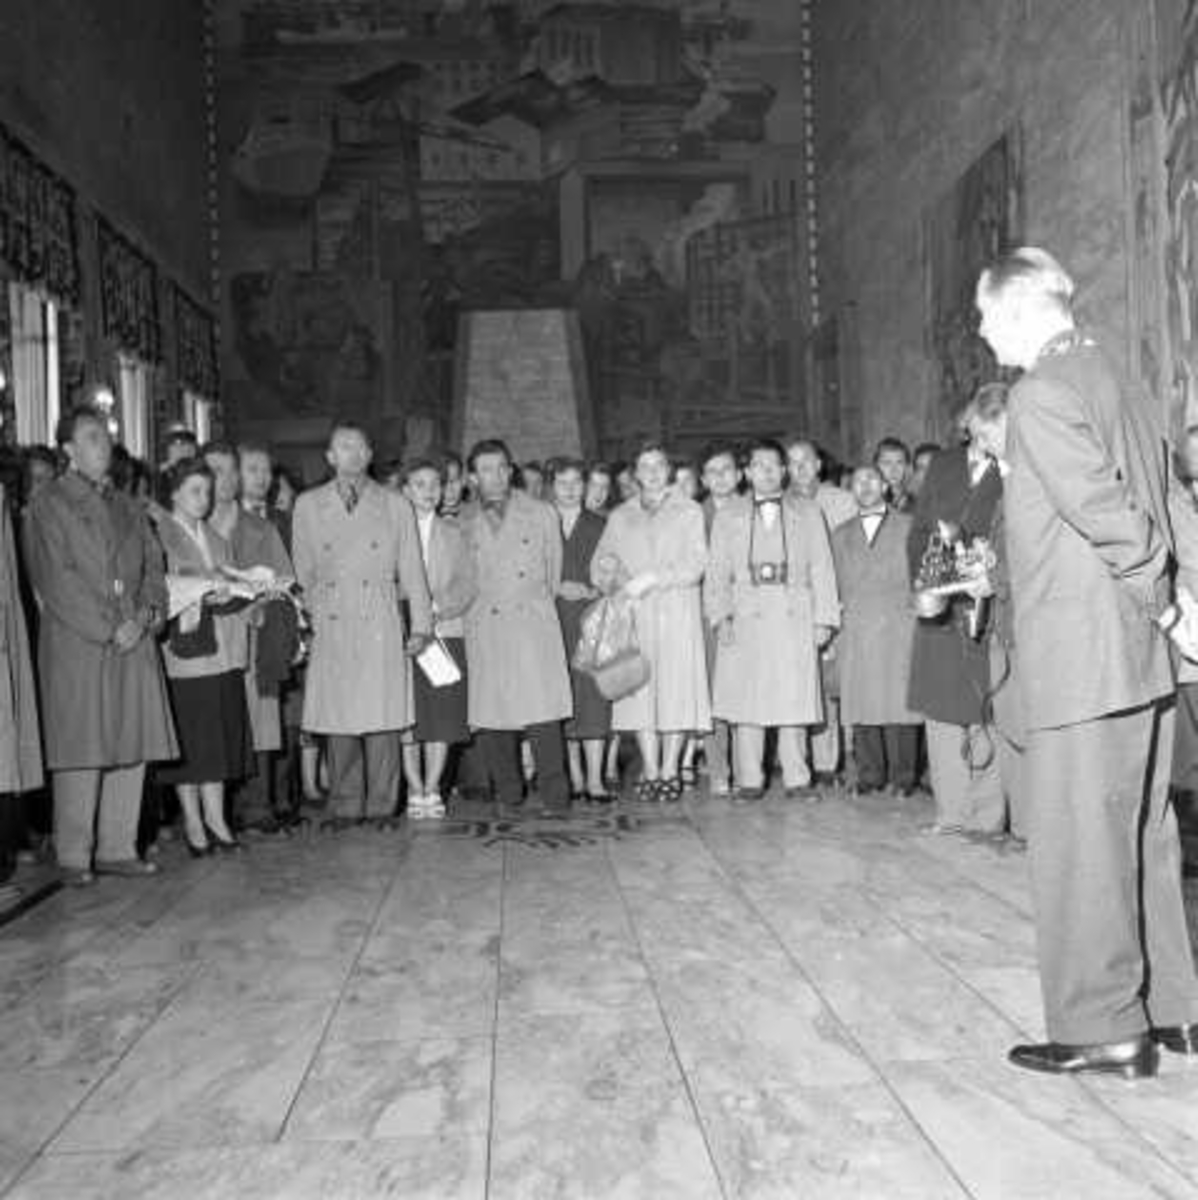 Tsjekkoslovakiske dansere overrekker gave til ordfører, Oslo Rådhus, Oslo, 1956.